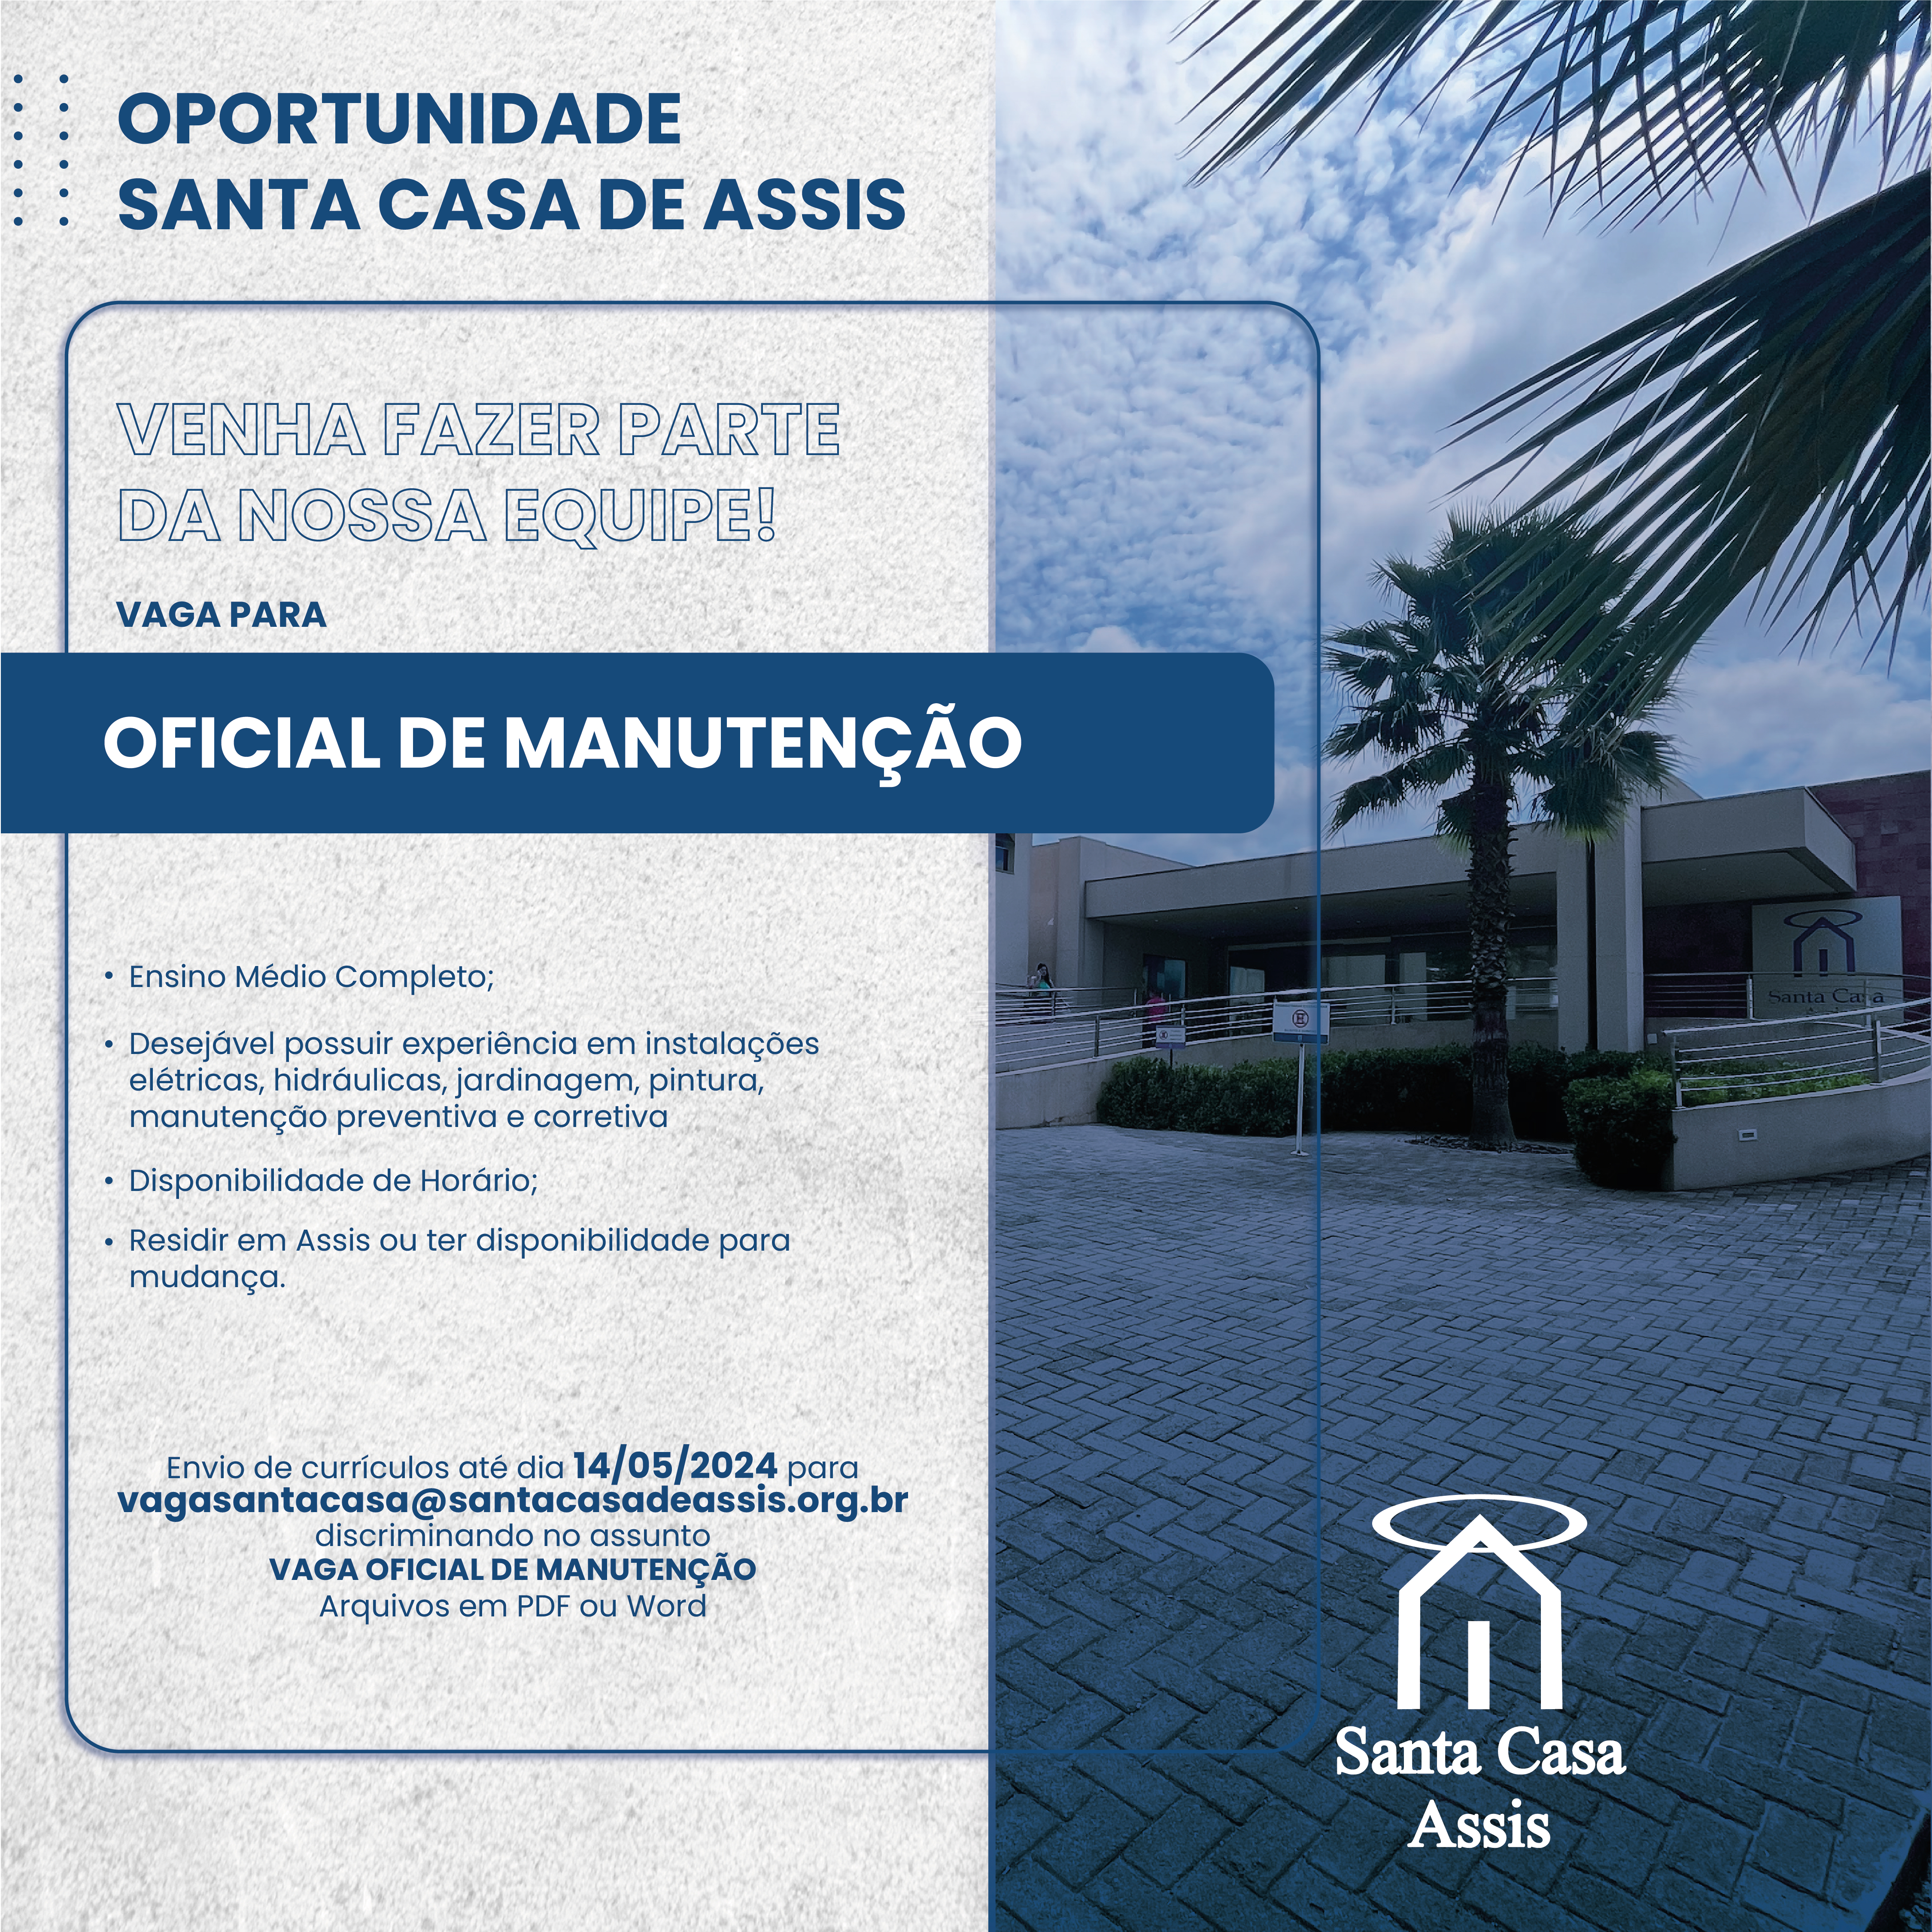 OPORTUNIDADE SANTA CASA DE ASSIS - OFICIAL DE MANUTENÇÃO